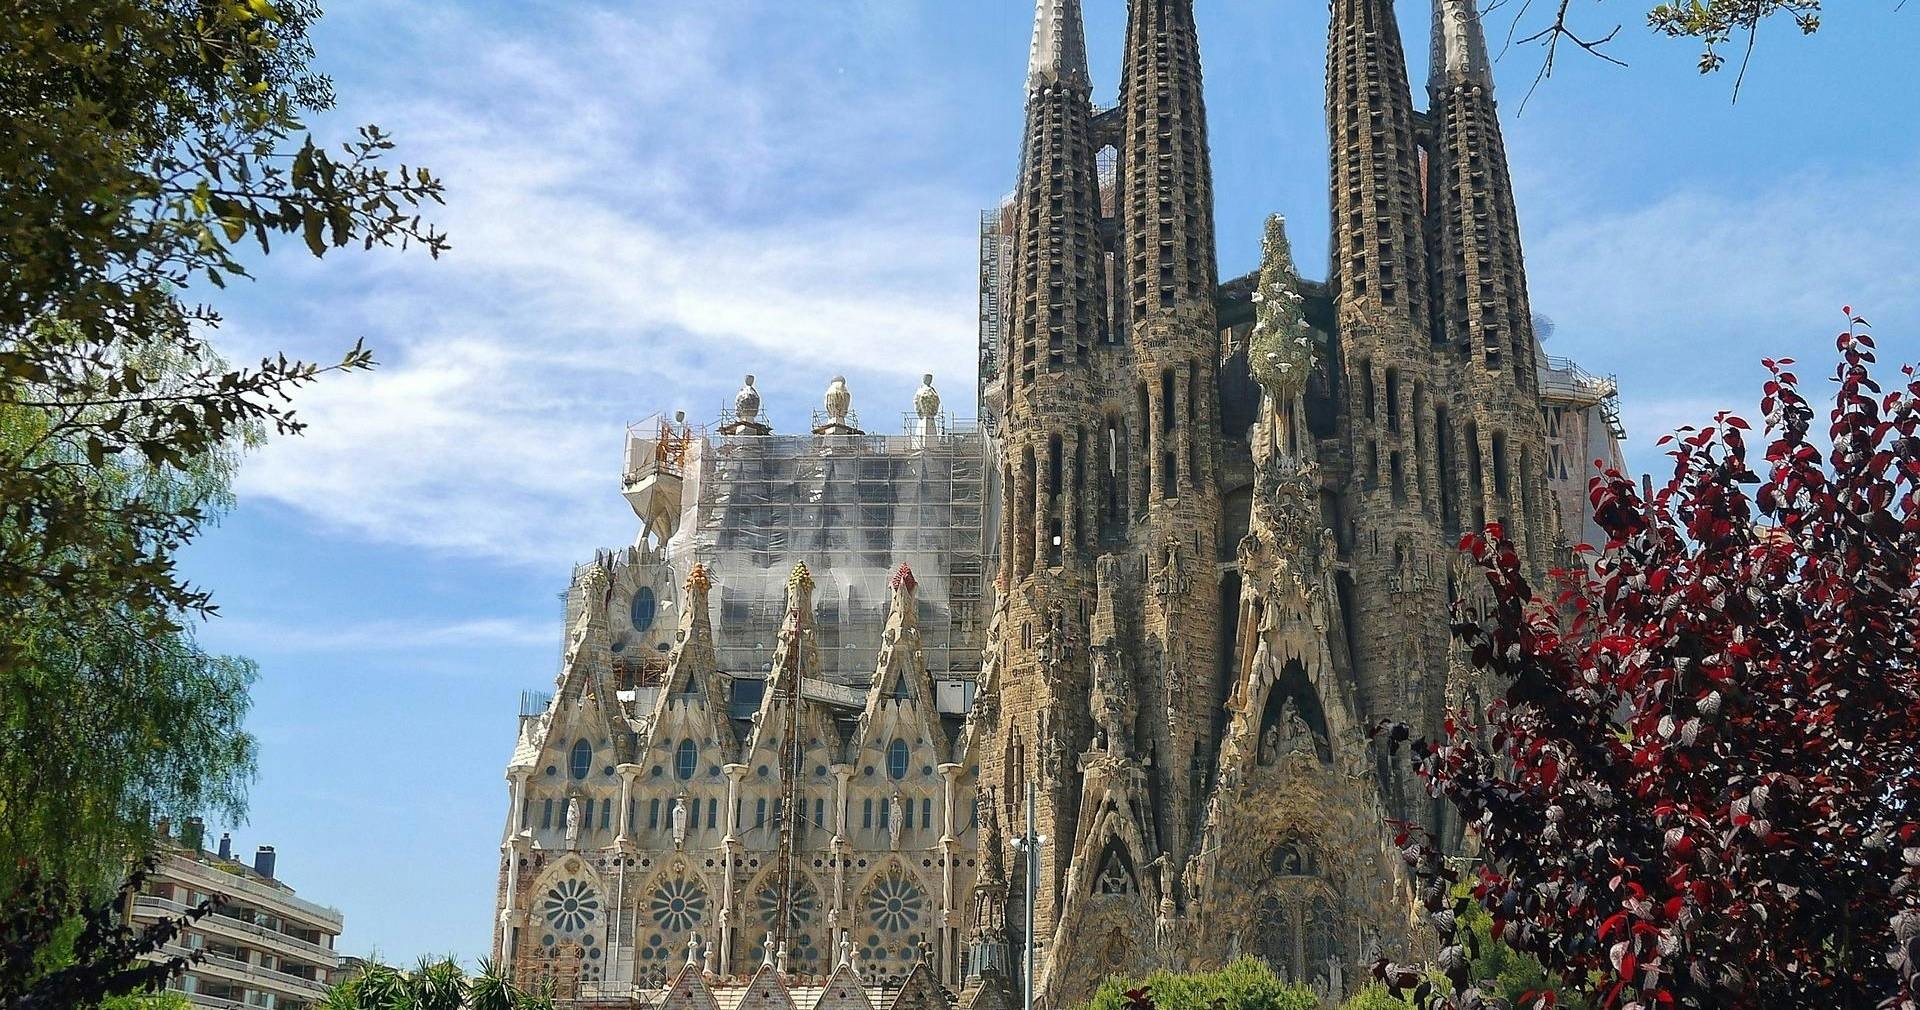 Visita guiada pela Sagrada Família com entrada preferencial e acesso à torre